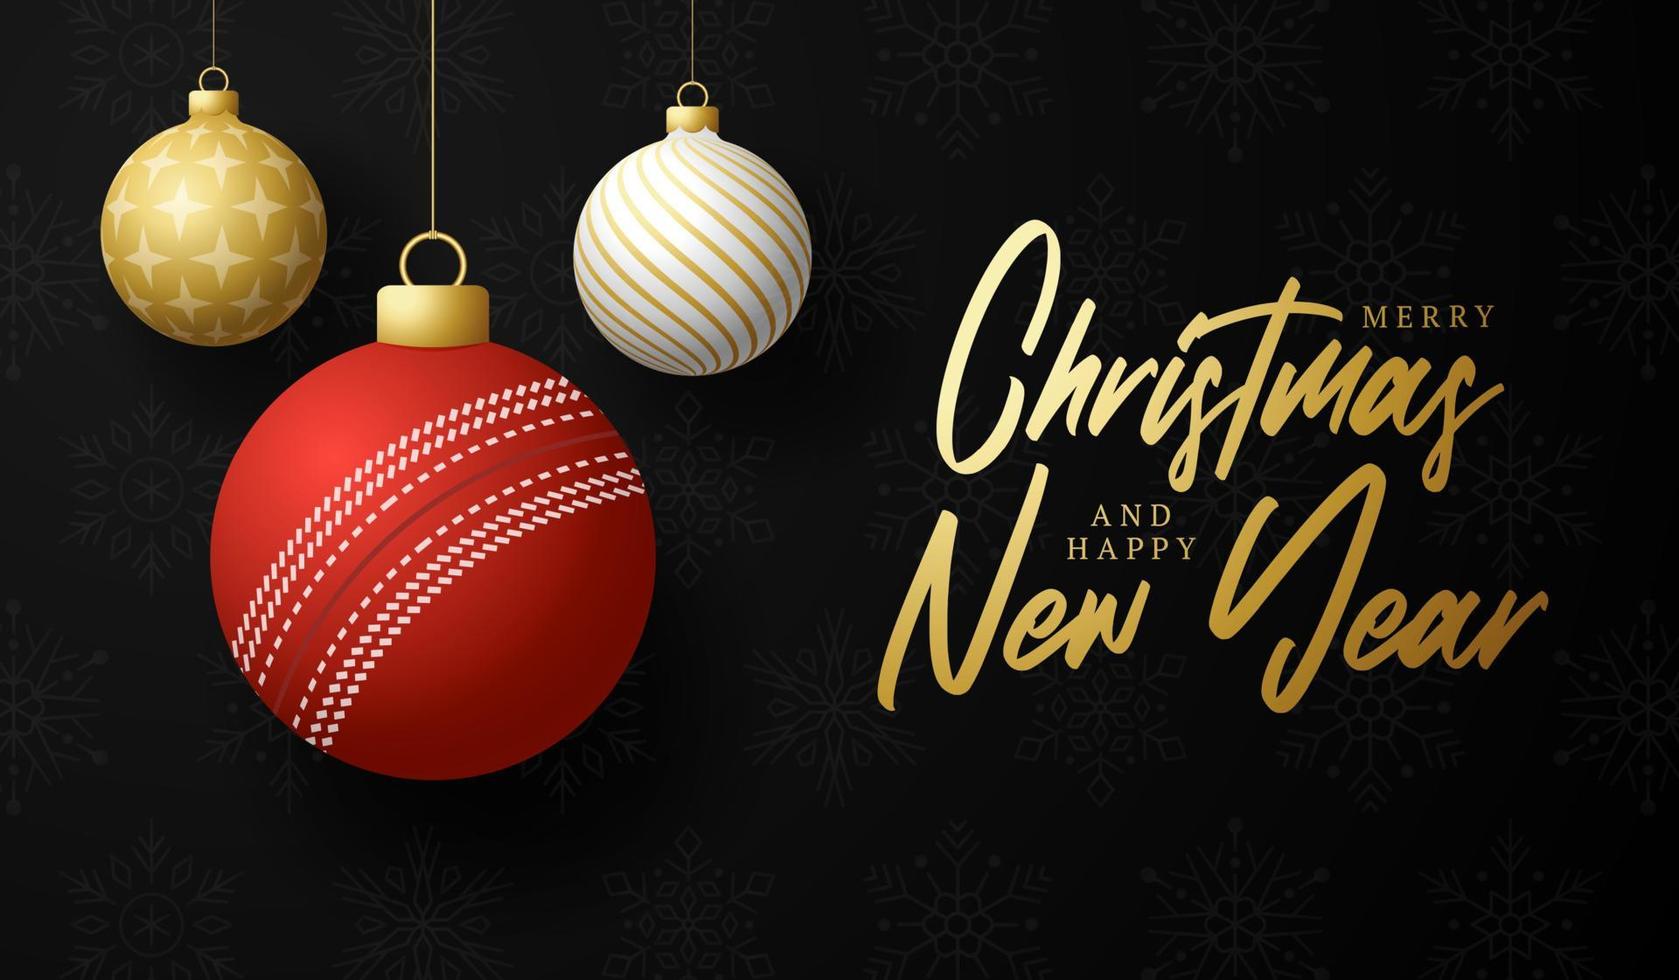 cricket feliz navidad y próspero año nuevo tarjeta de felicitación deportiva de lujo. bola de cricket como una bola de Navidad en el fondo. ilustración vectorial. vector